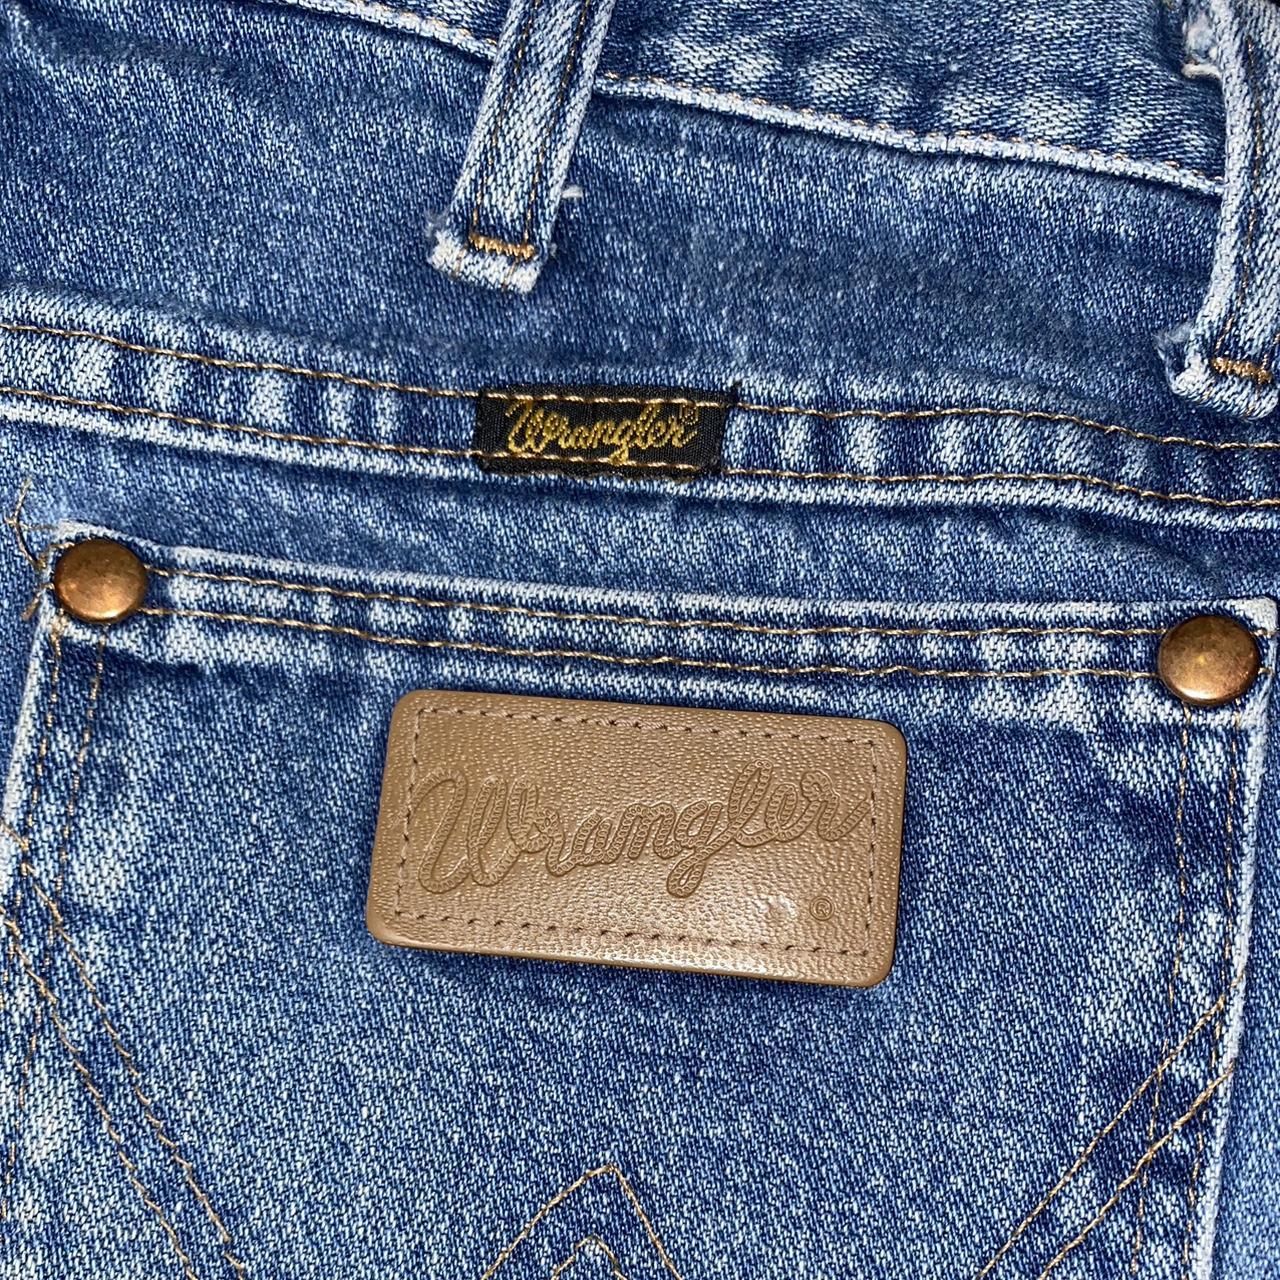 size 27 wrangler straight leg jeans 💙 - Depop